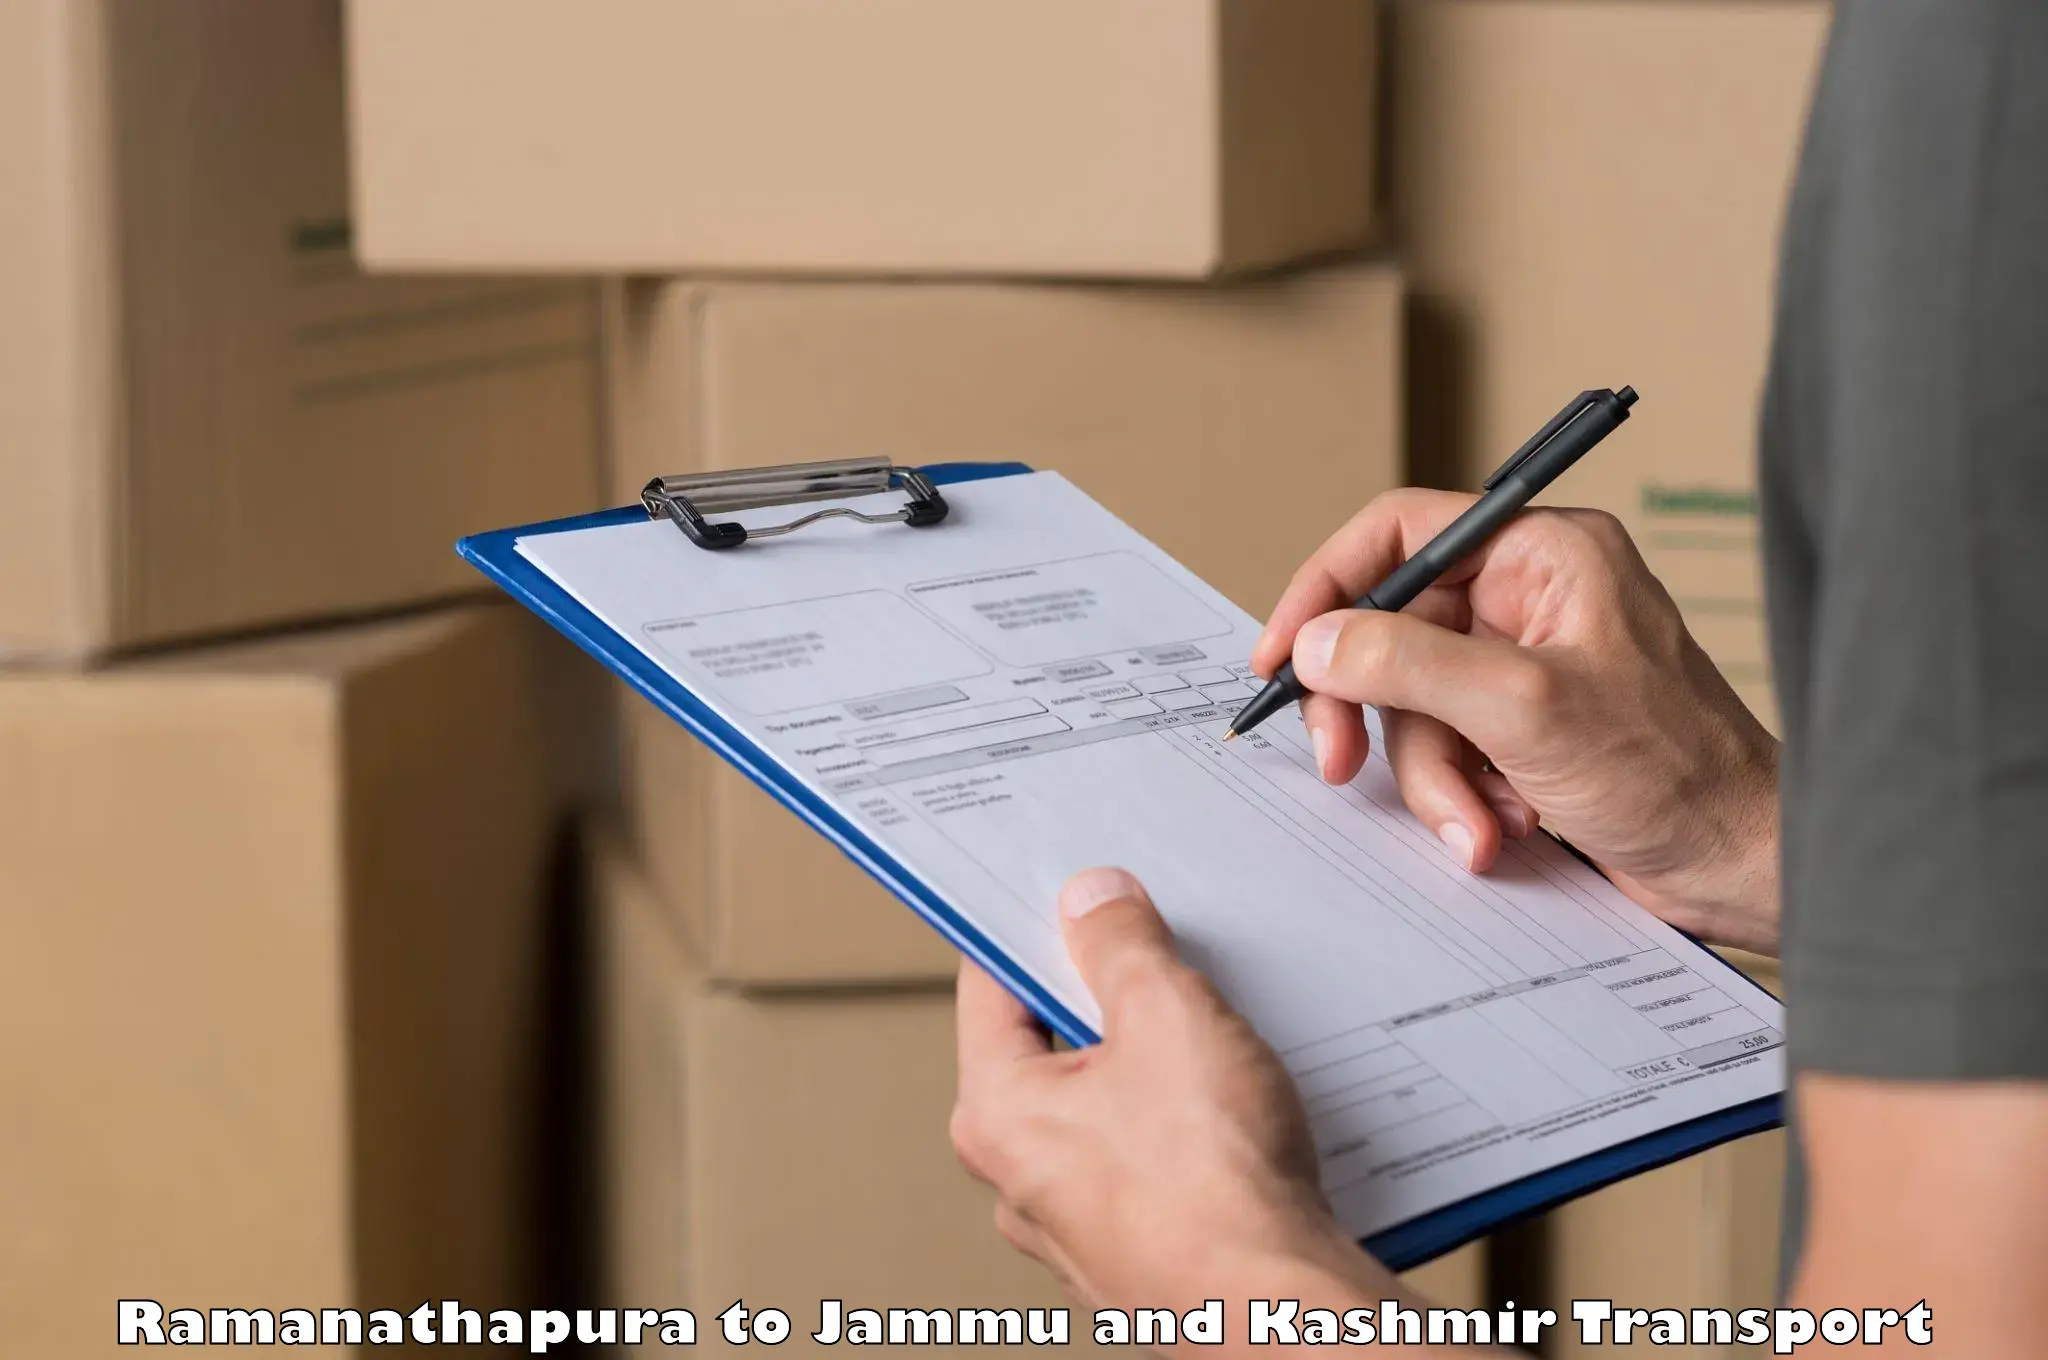 Air cargo transport services Ramanathapura to Jammu and Kashmir